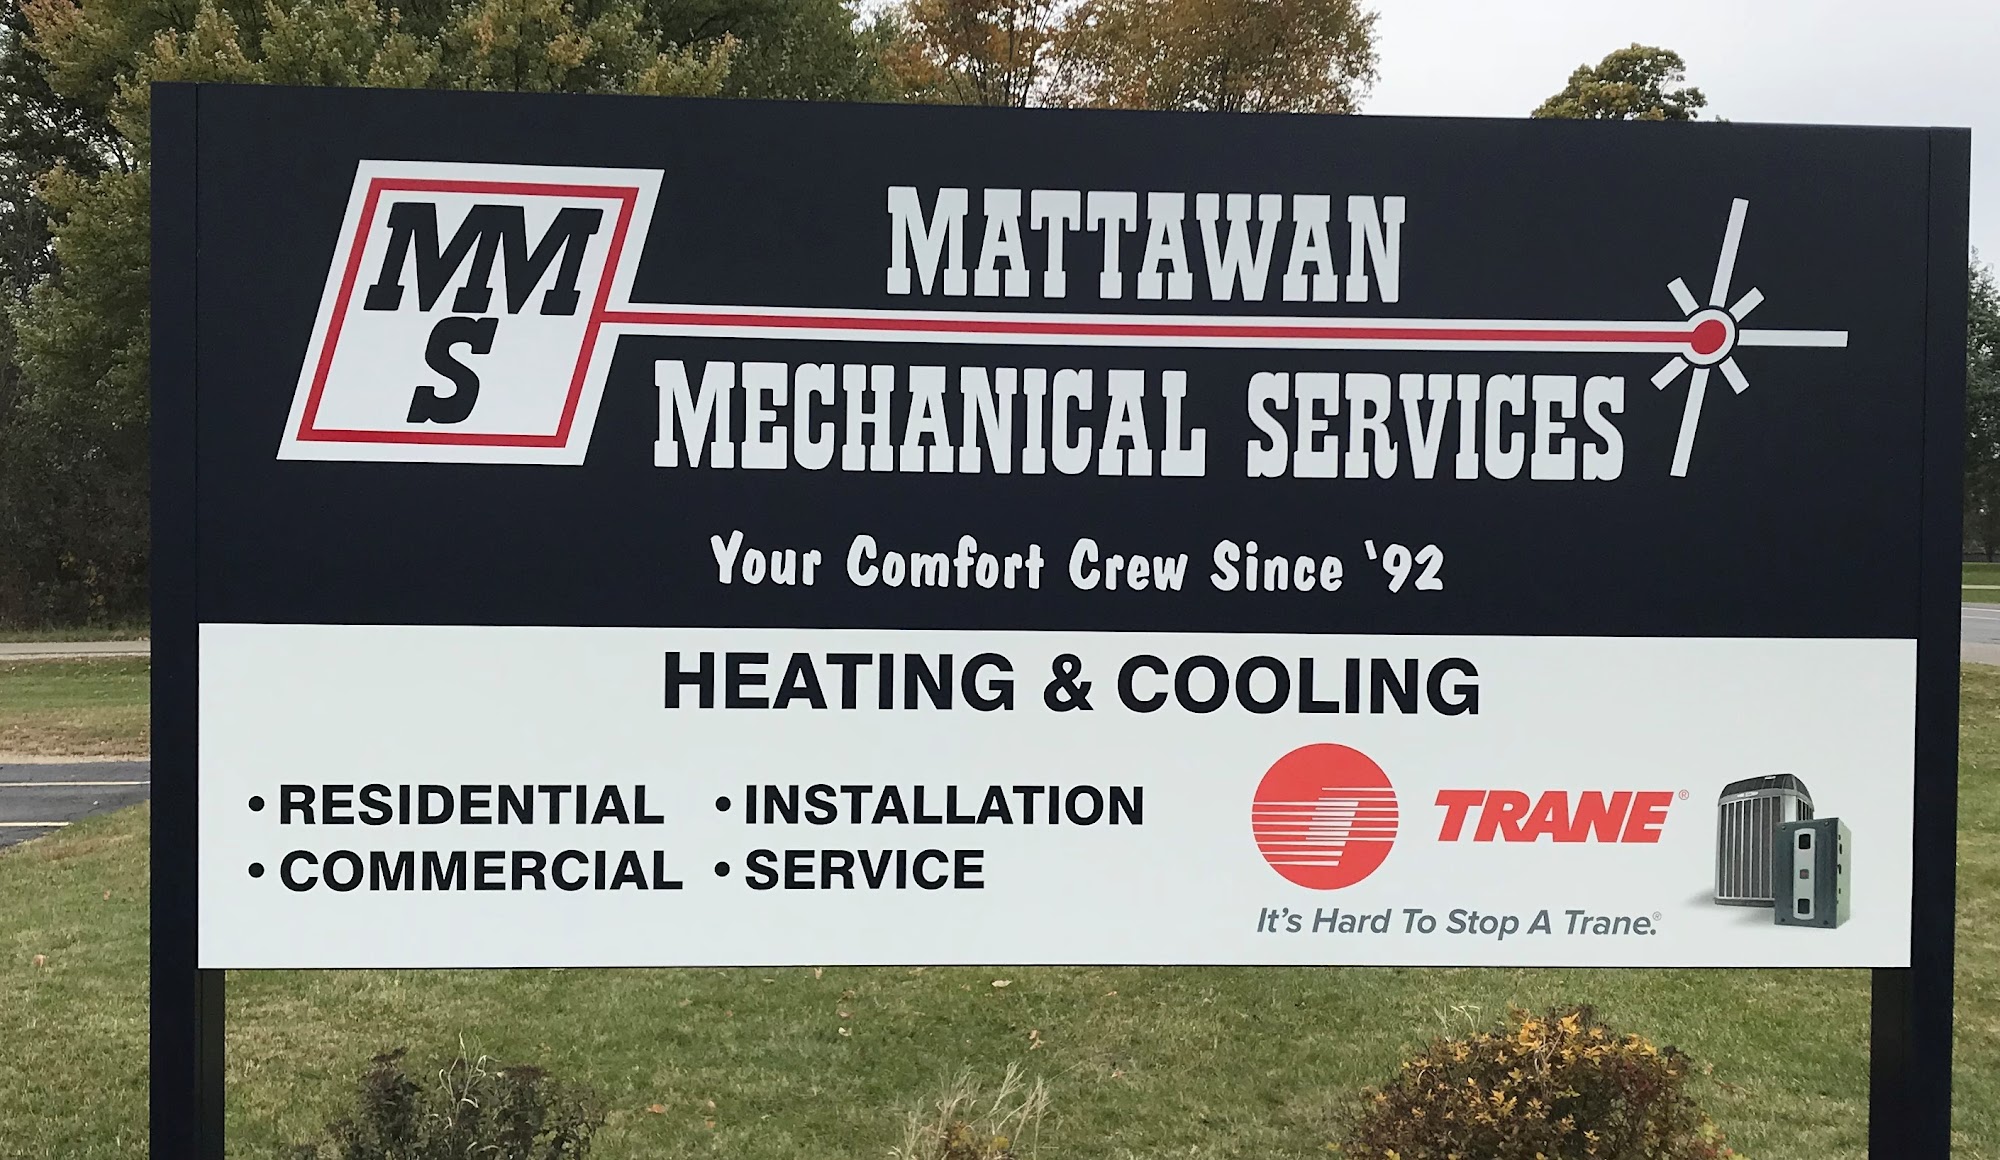 Mattawan Mechanical Services